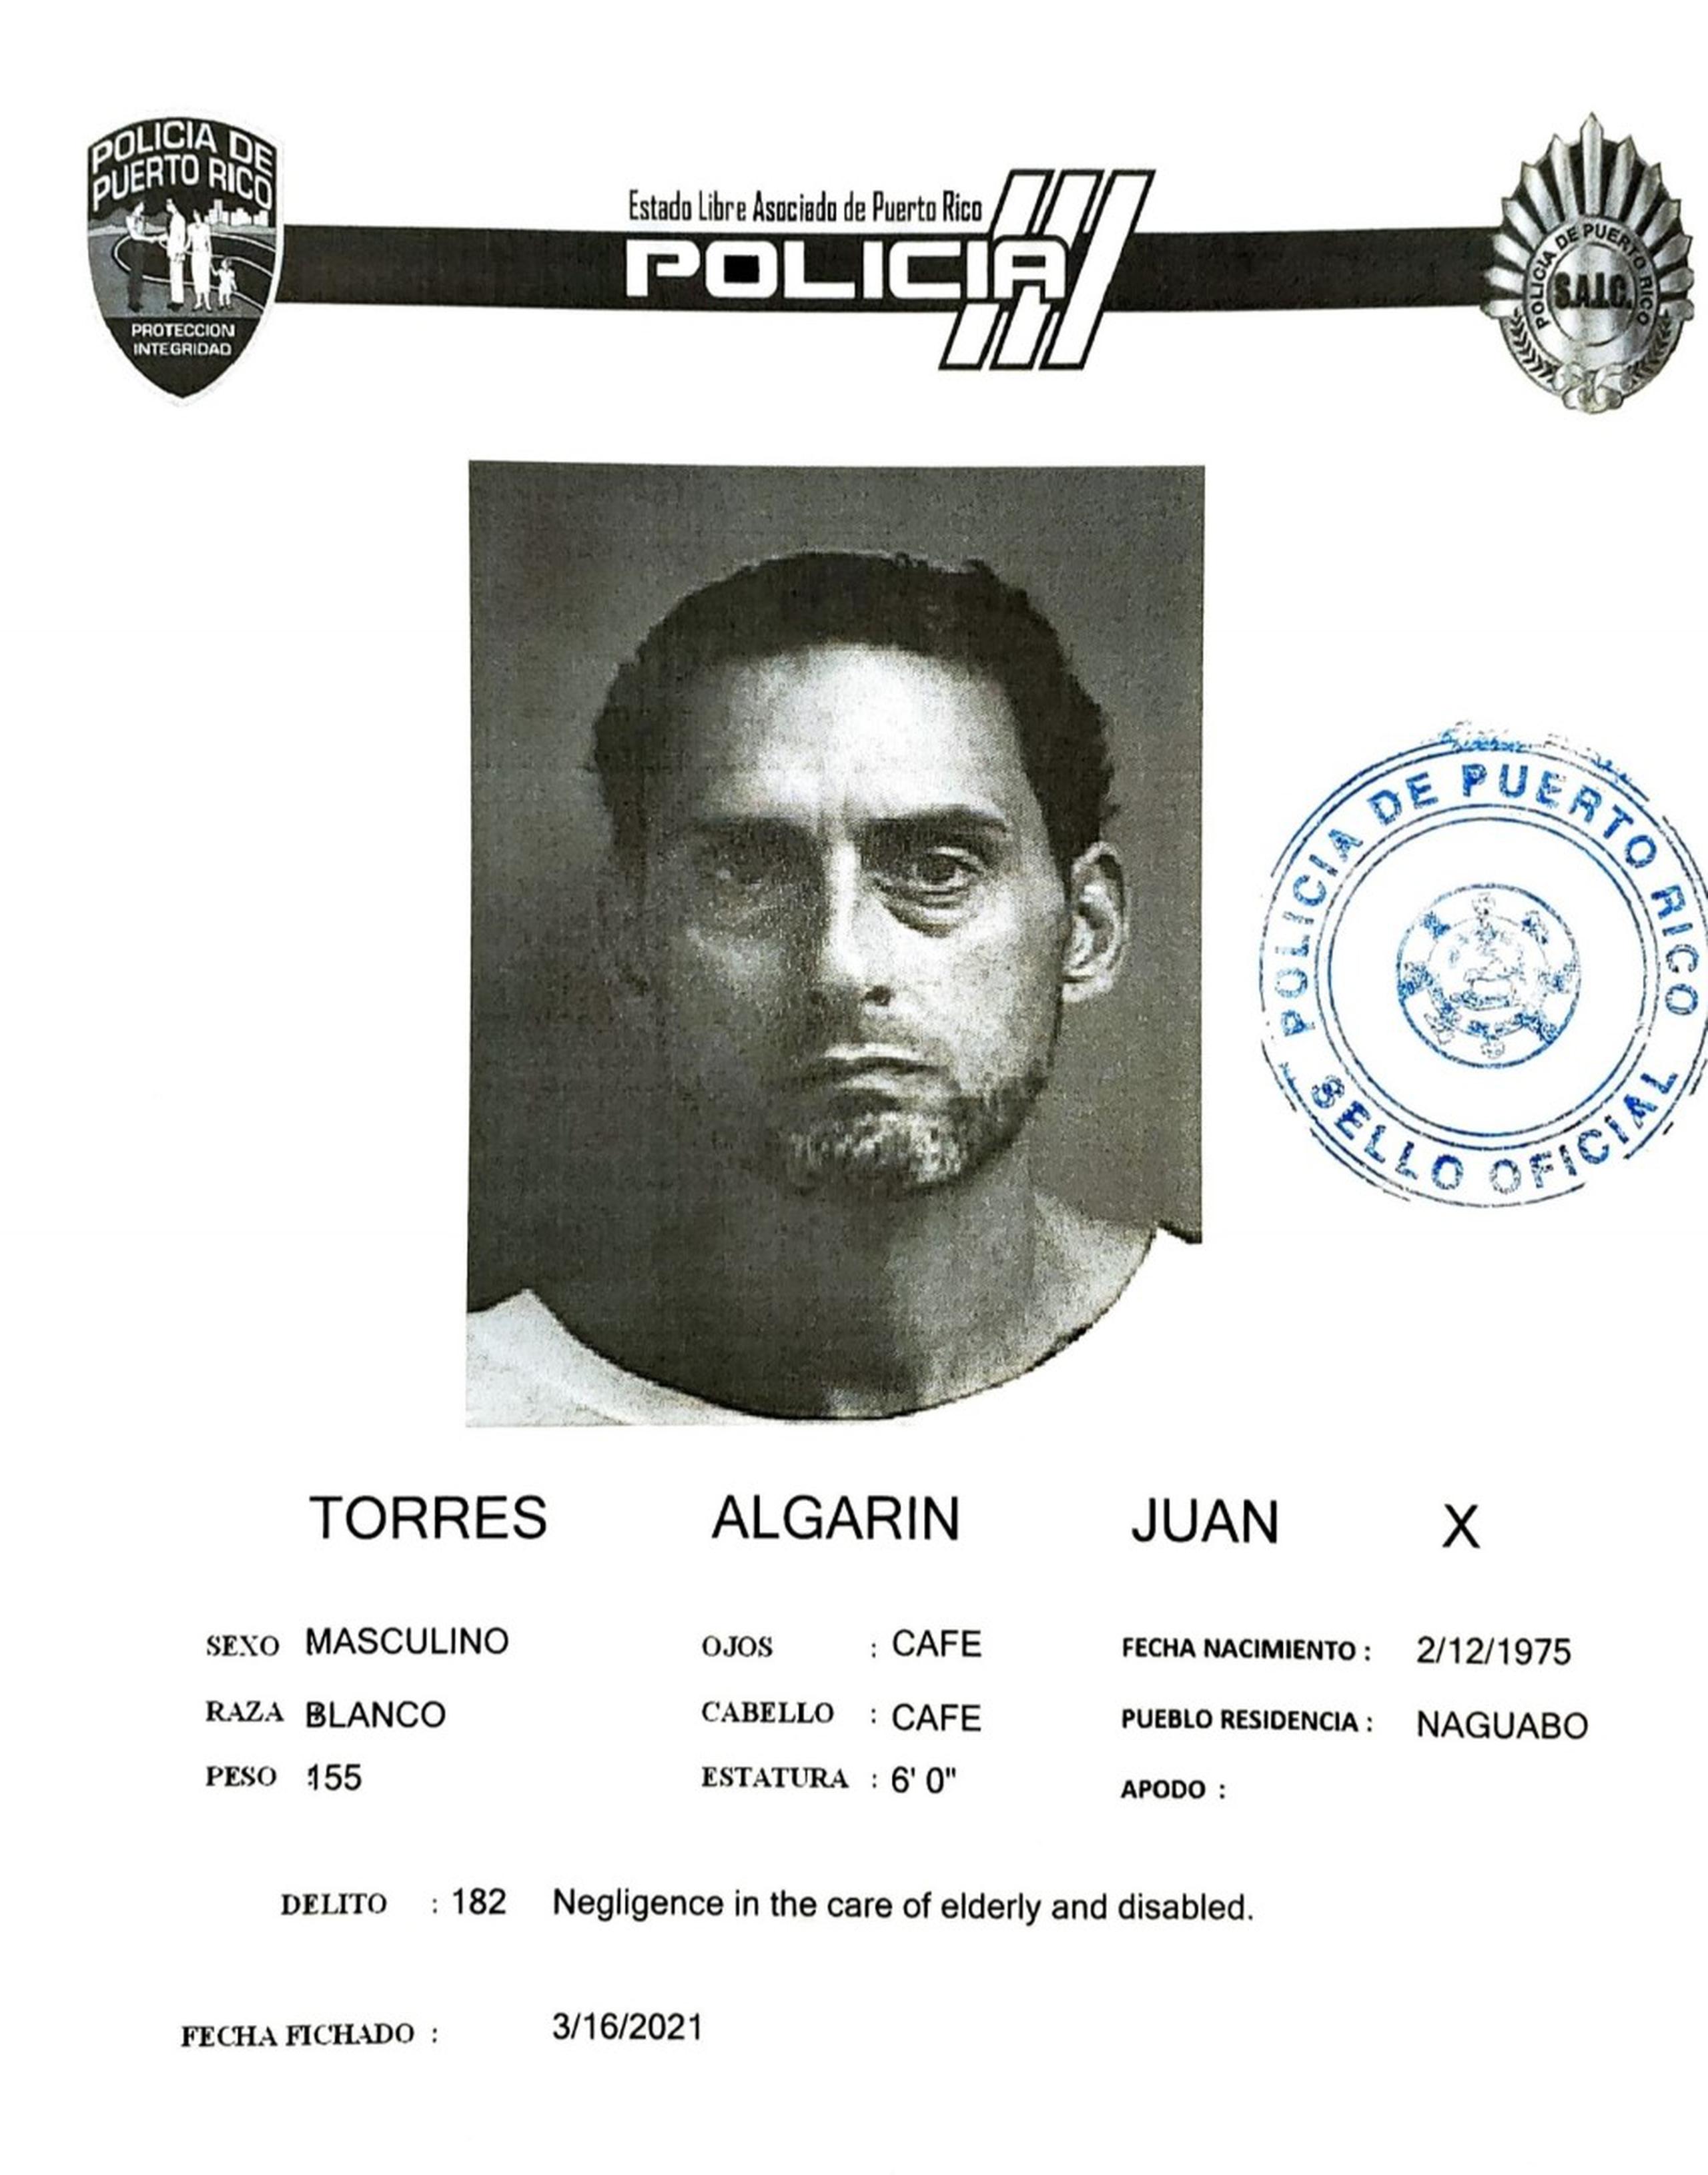 La jueza Ingrid Alvarado Delgado, del Tribunal de Caguas, causa para arresto contra Juan X. Torres Algarín, de 46 años, por los delitos de robo y maltrato a una [persona de edad avanzada y le fijó una fianza de $10,000.